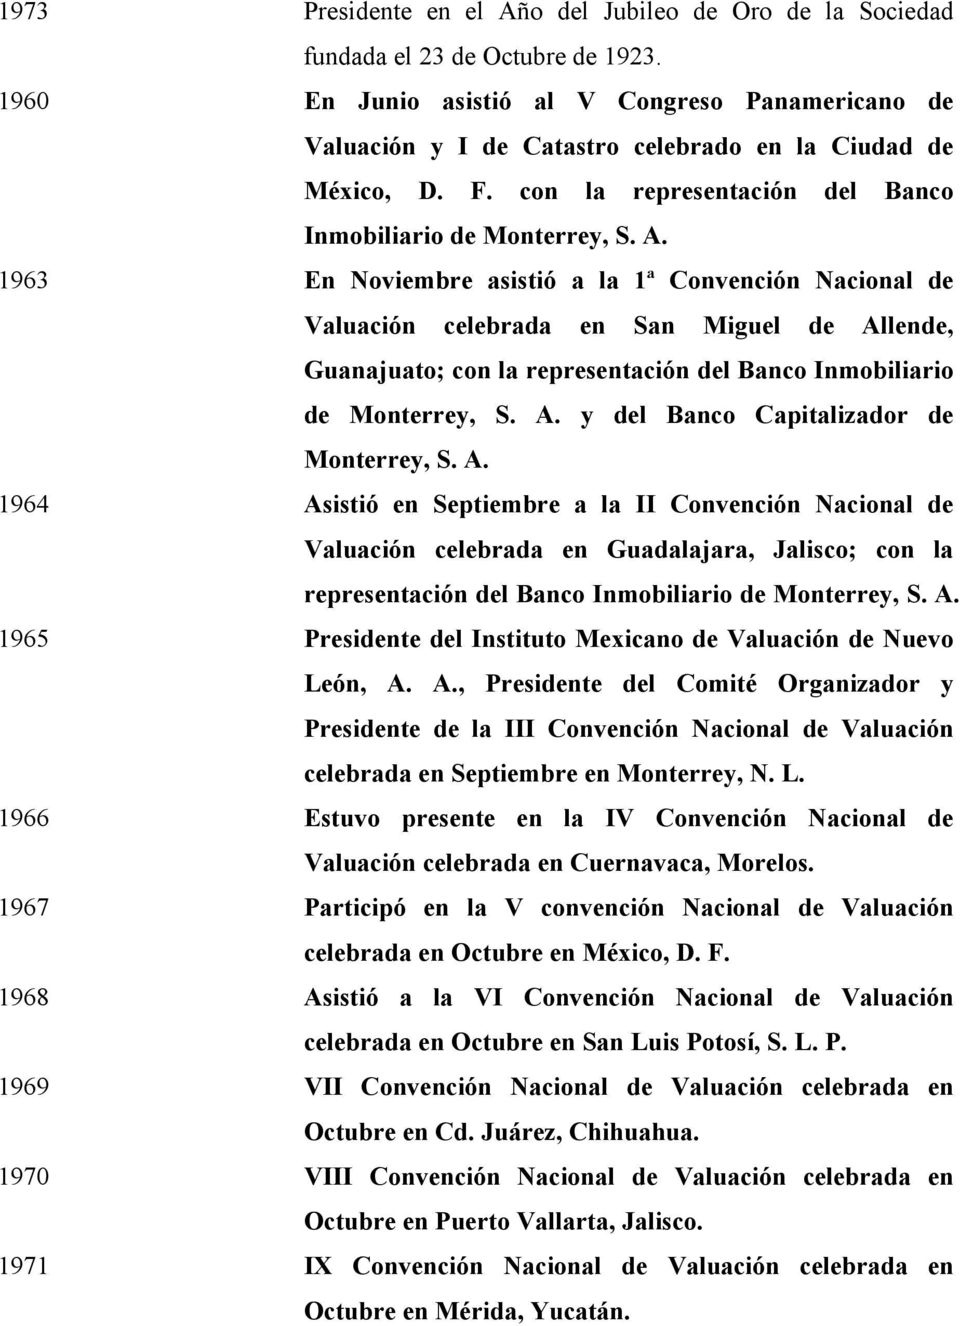 1963 En Noviembre asistió a la 1ª Convención Nacional de Valuación celebrada en San Miguel de Allende, Guanajuato; con la representación del Banco Inmobiliario de Monterrey, S. A. y del Banco Capitalizador de Monterrey, S.